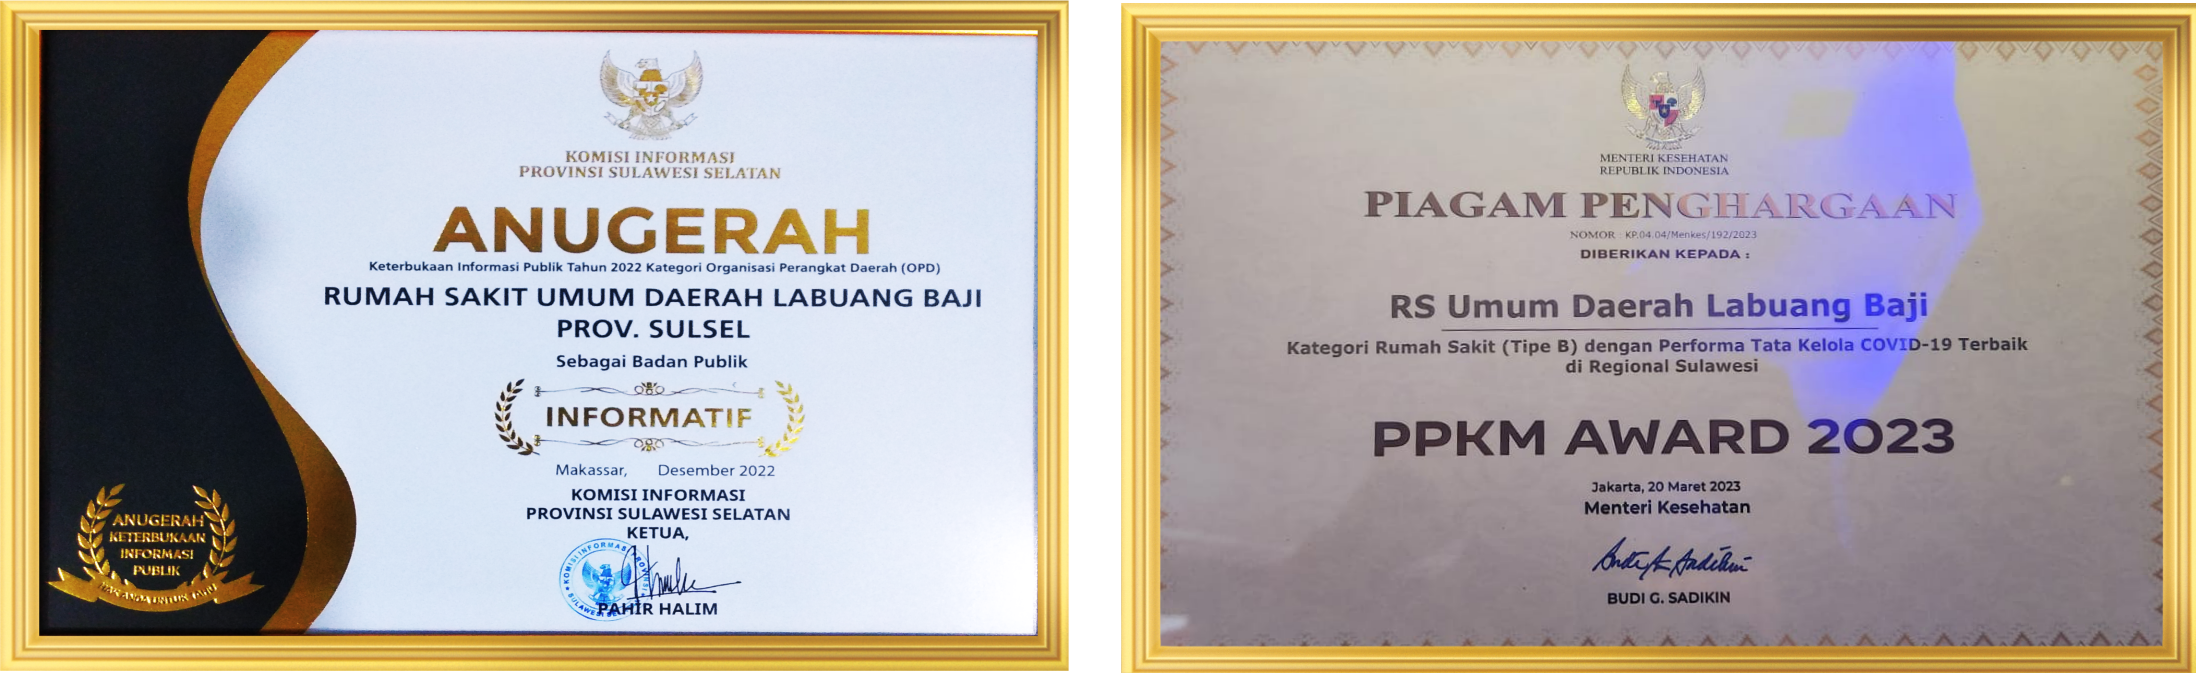 Banner PPKM Award & Keterbukaan Informasi